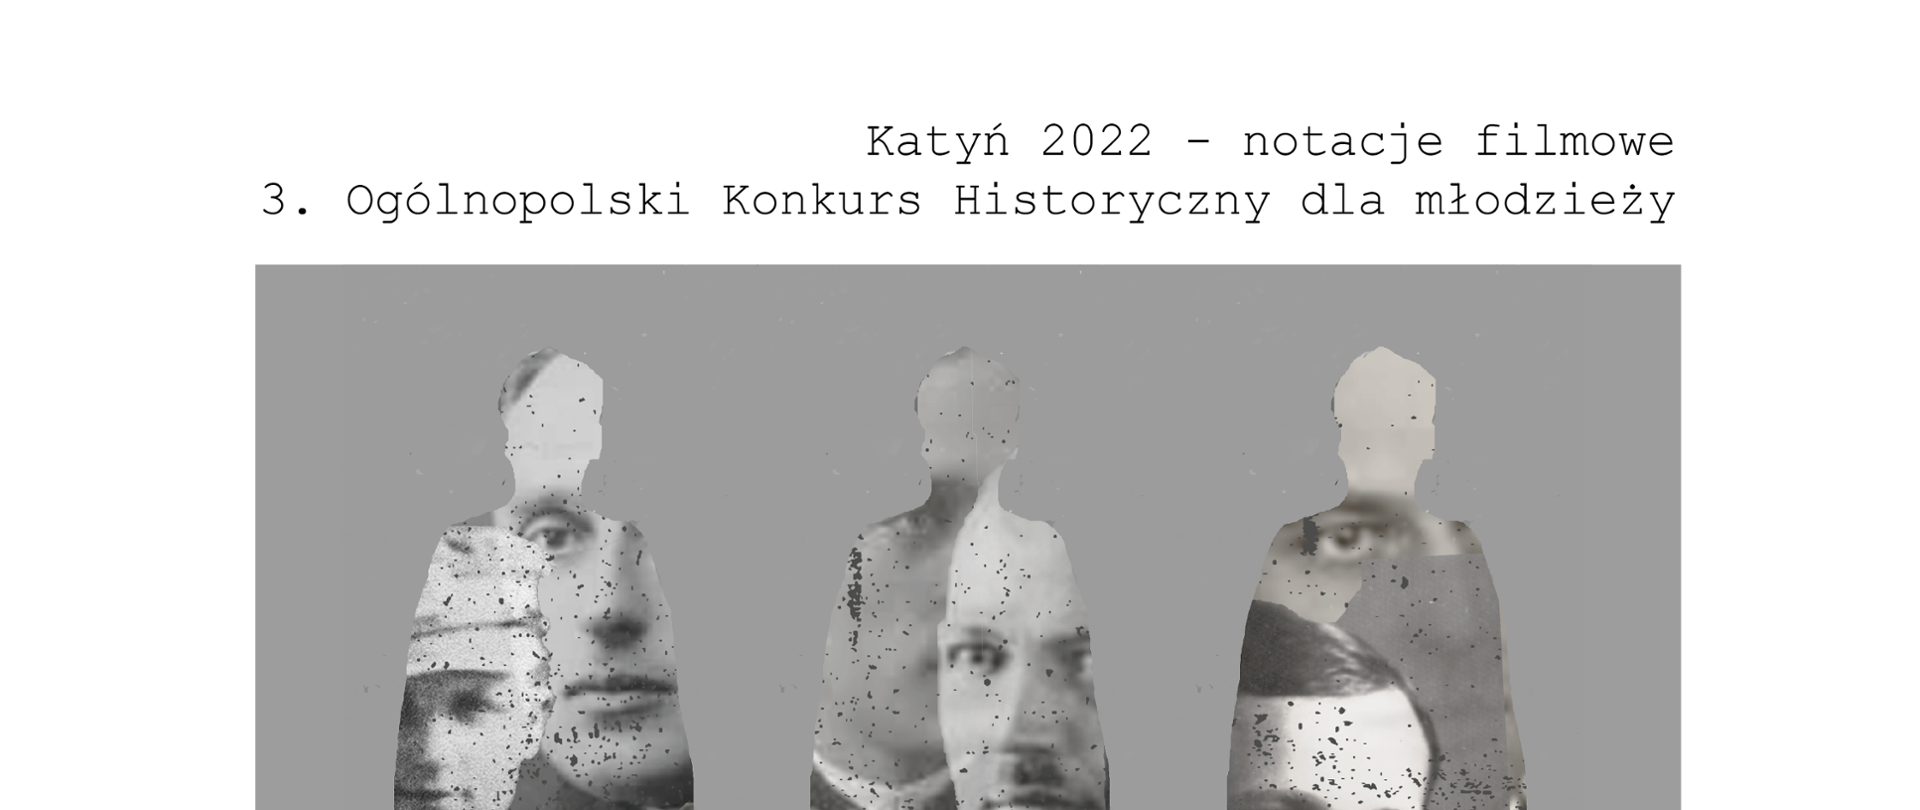 Ogólnopolski Konkurs Historyczny dla młodzieży pn. "Katyń 2022. Notacje filmowe" 